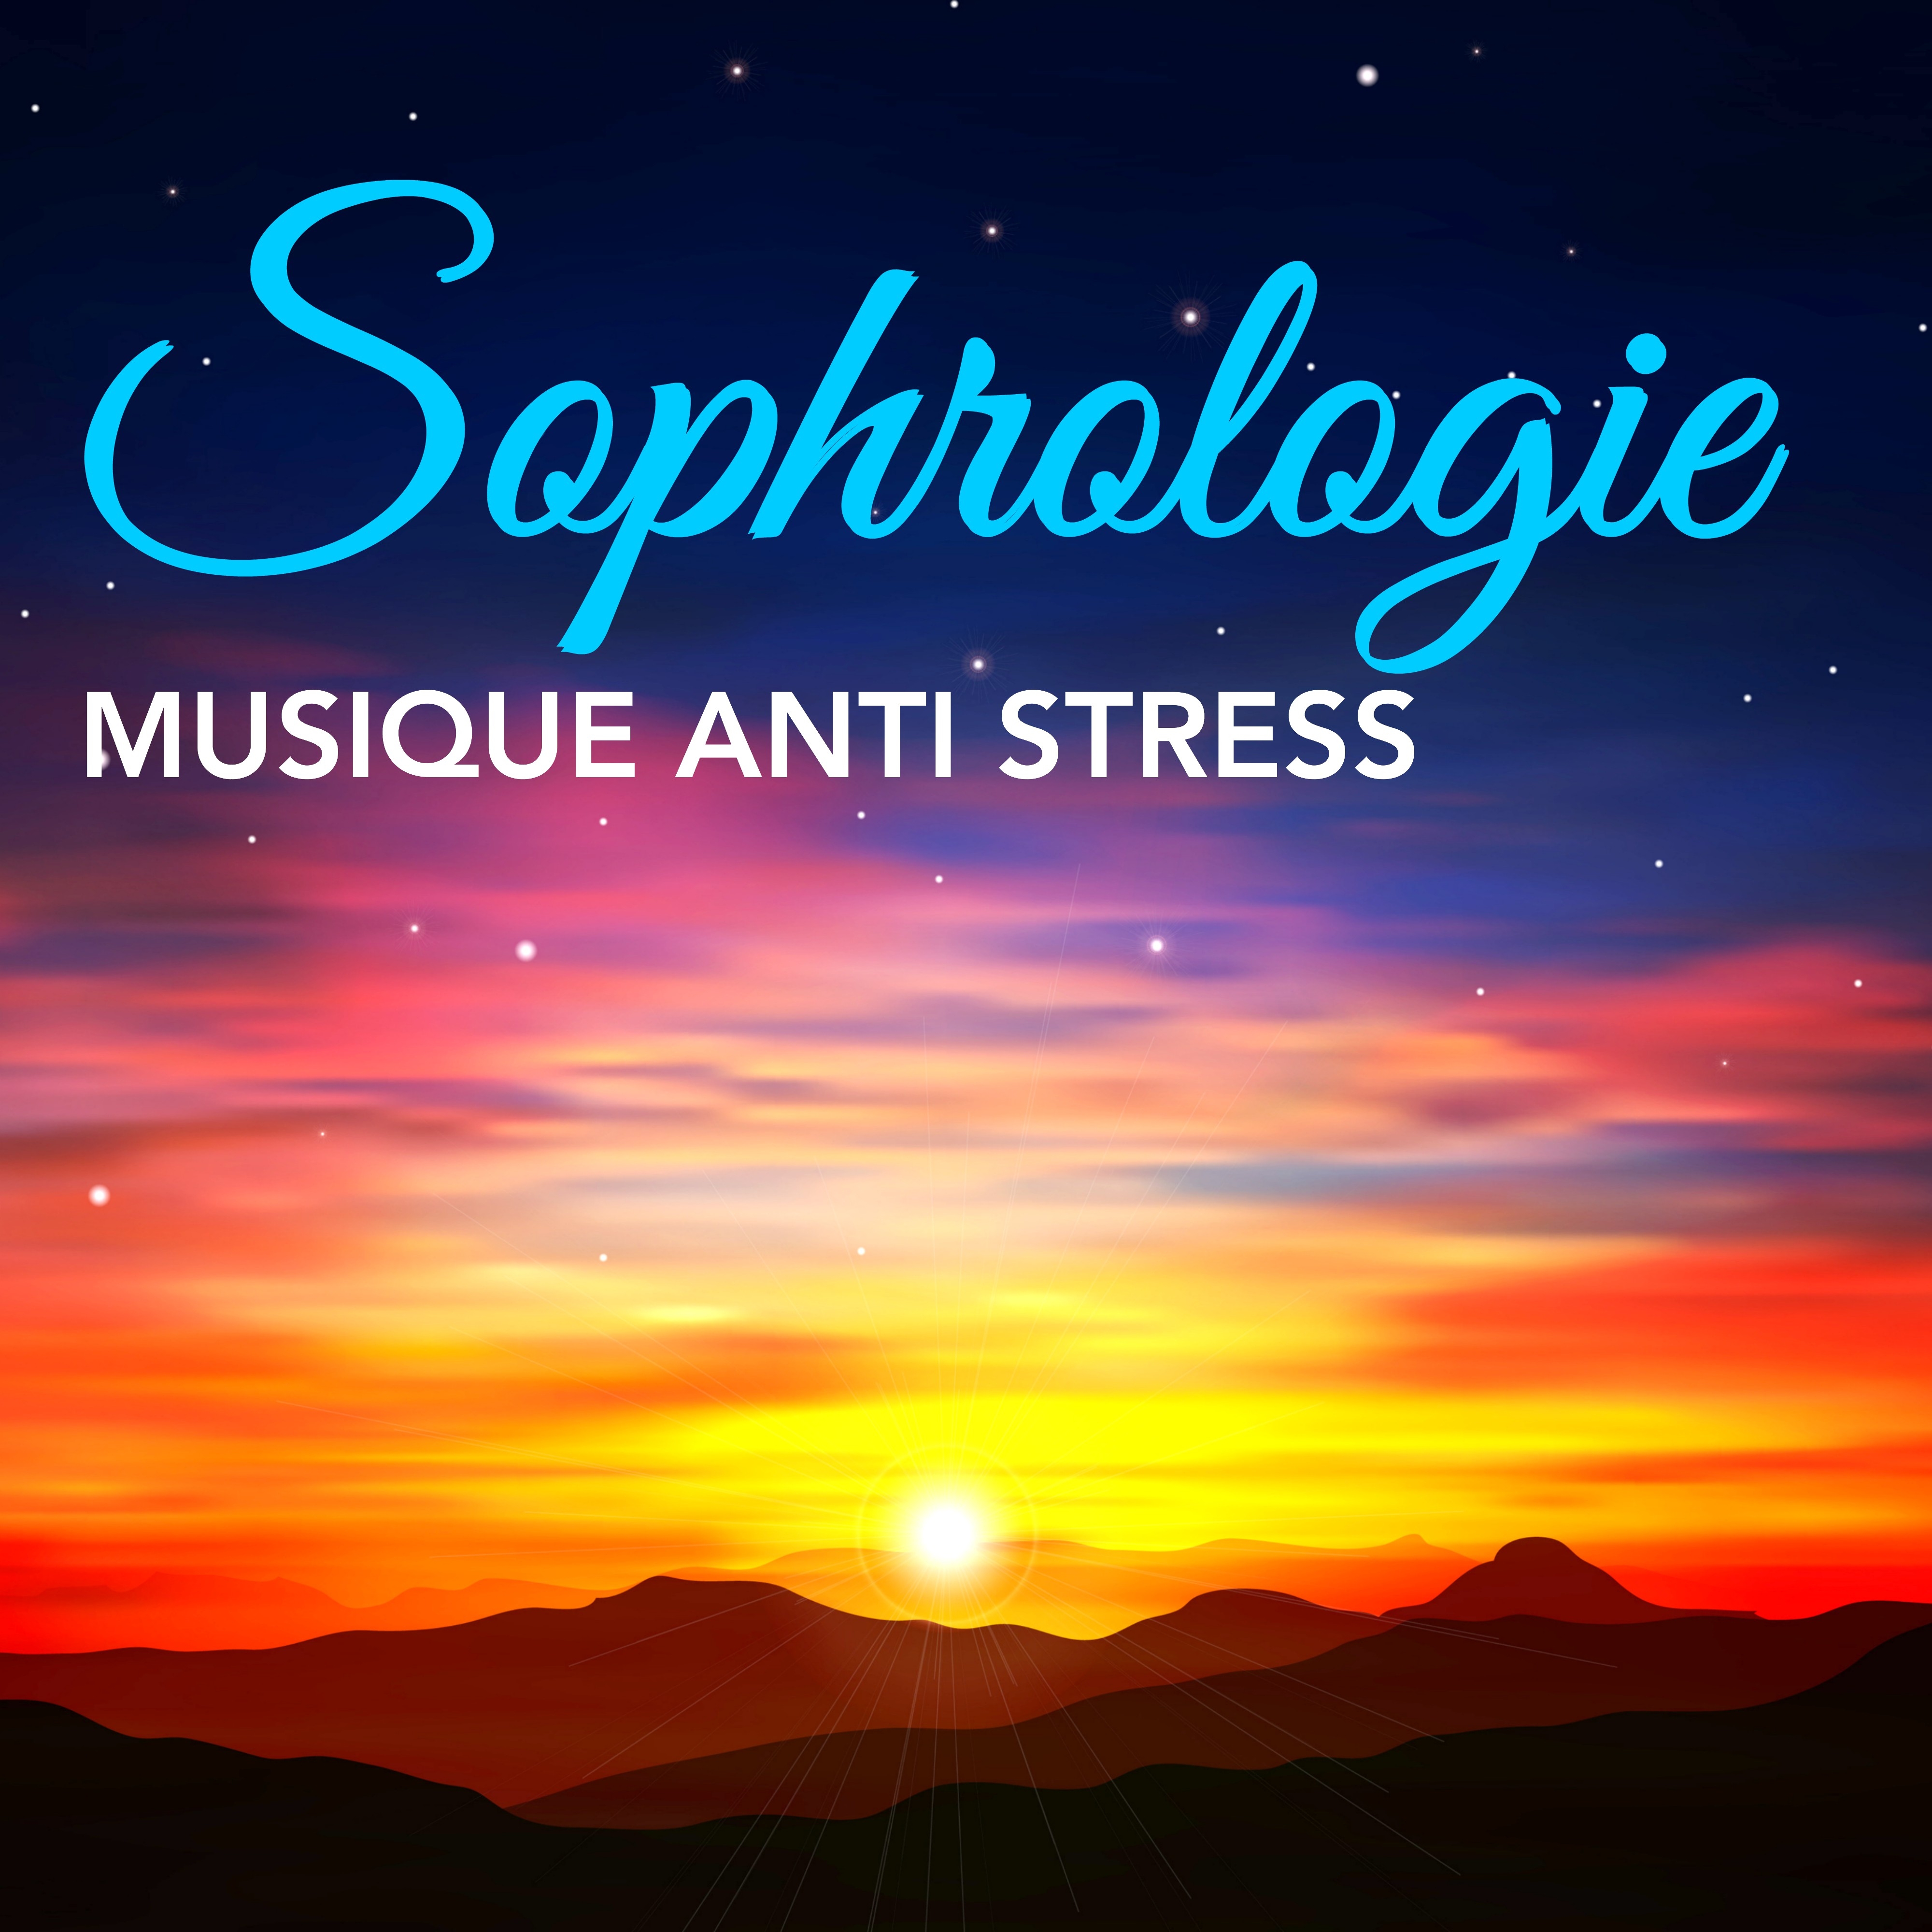 Sophrologie - Musique Anti Stress: Écoute notre Compilation Relaxant pour Méditation, Yoga, Gérer le Stress et l'Anxiété